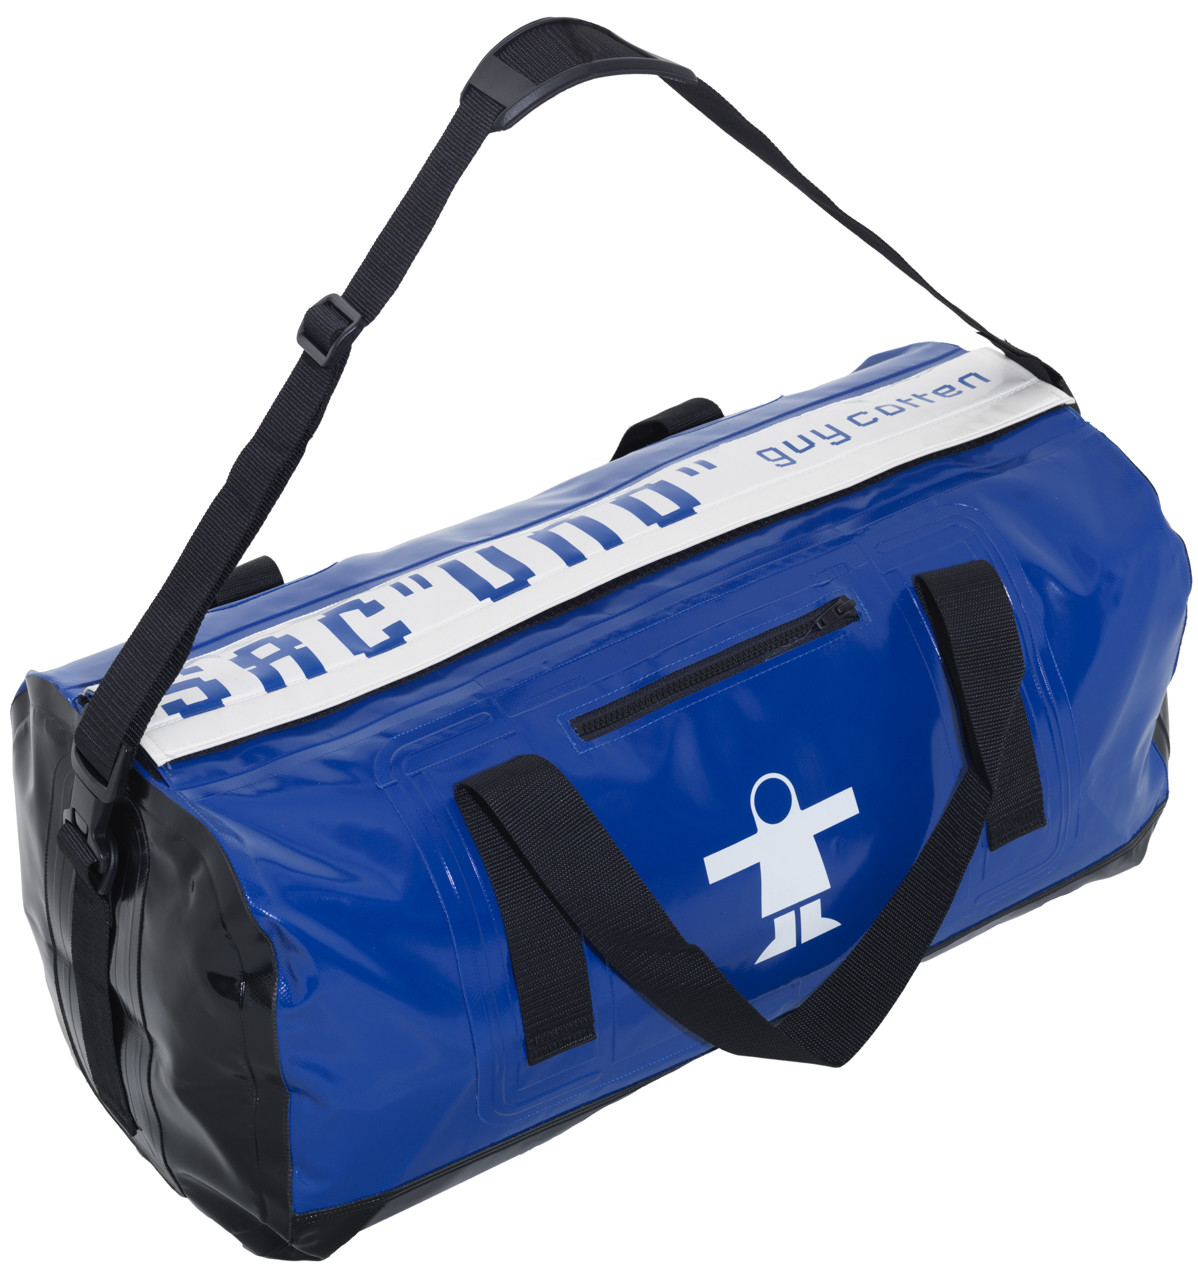 UNO waterproof holdall bag